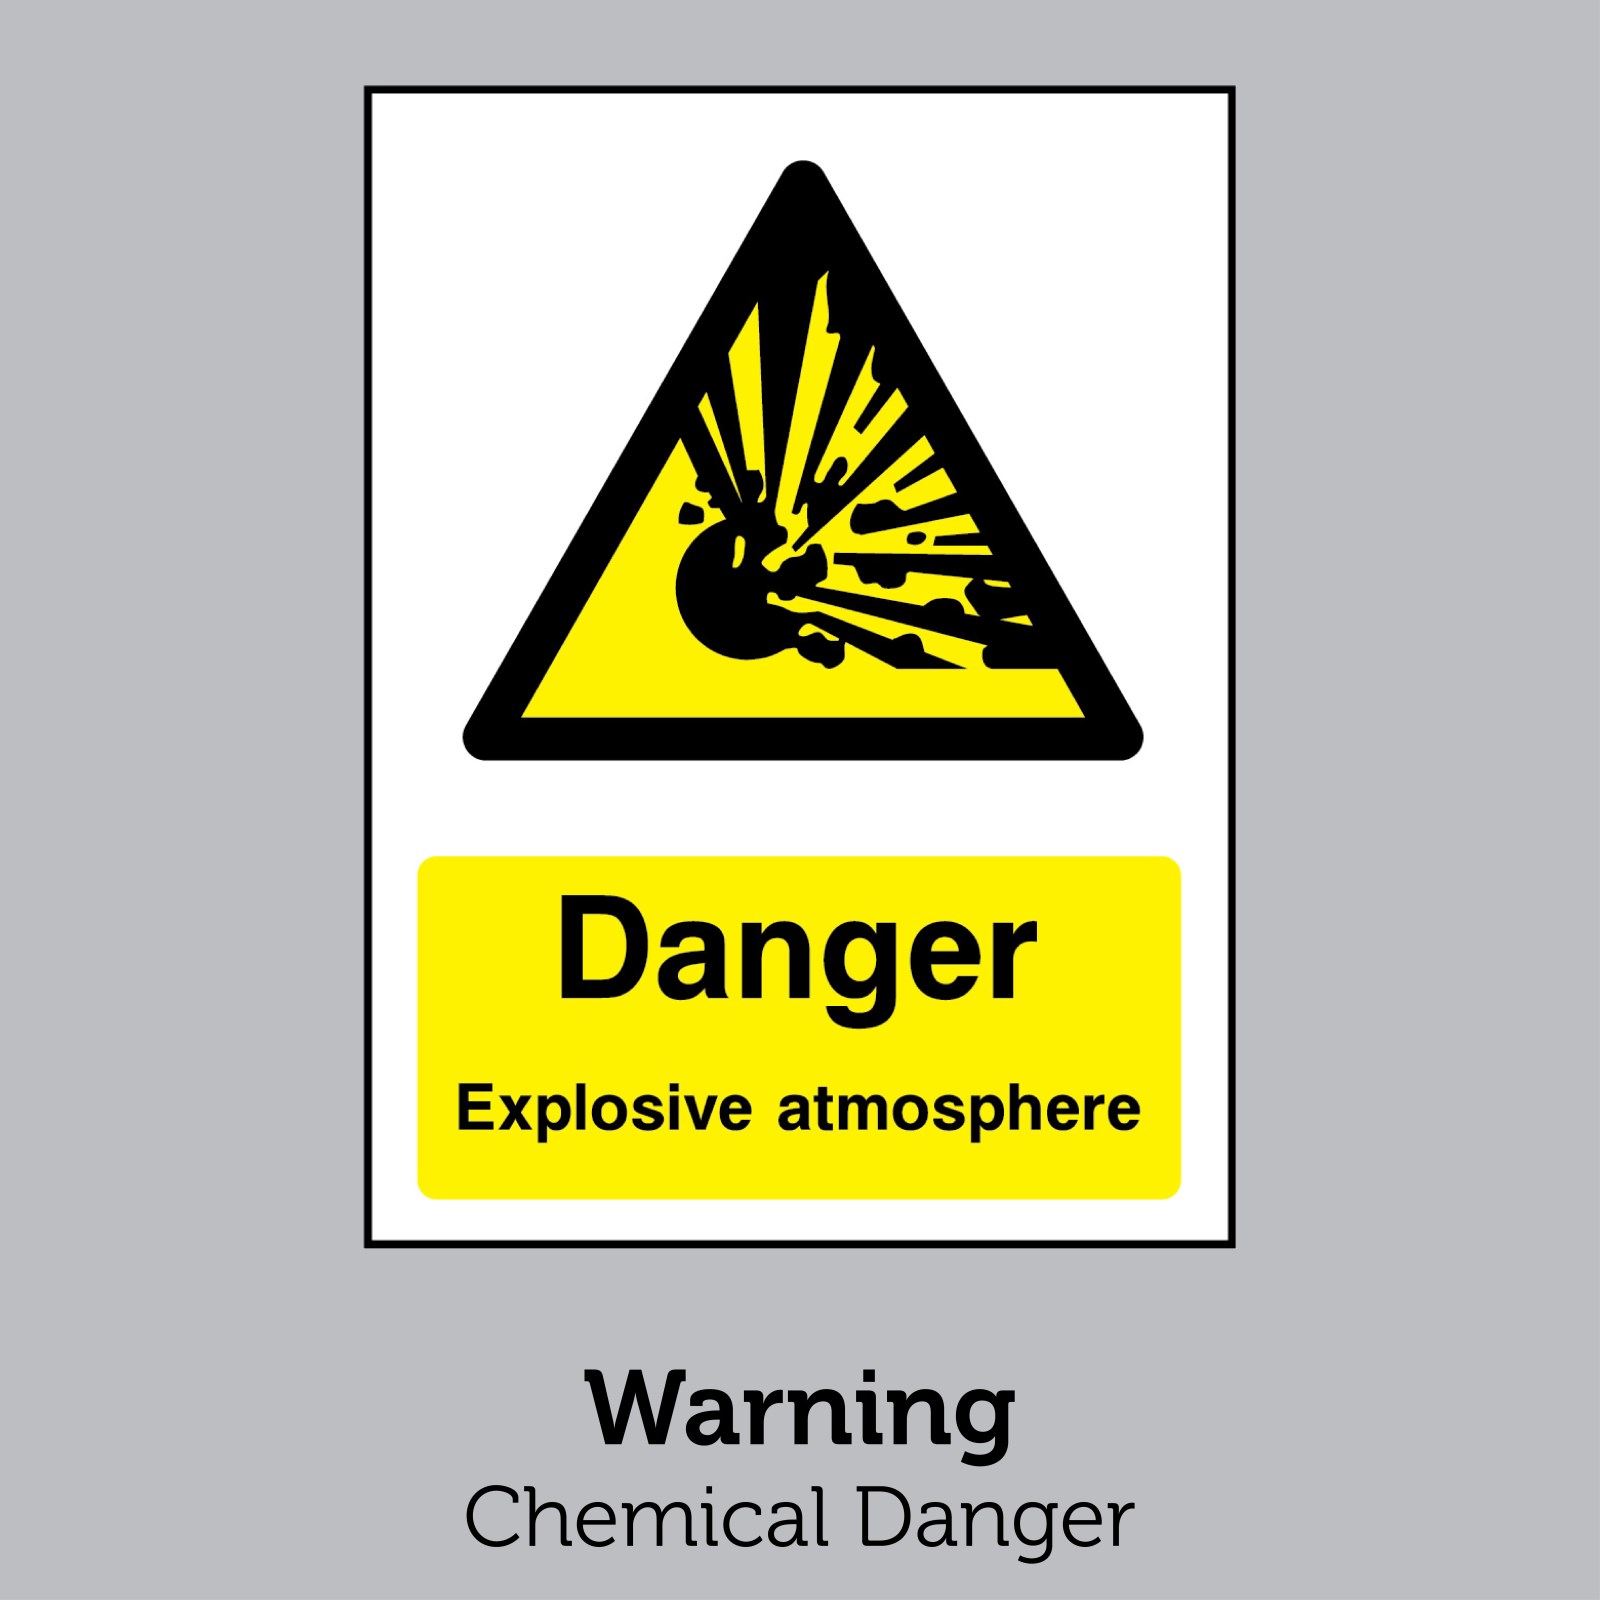 Warning - Chemical Danger